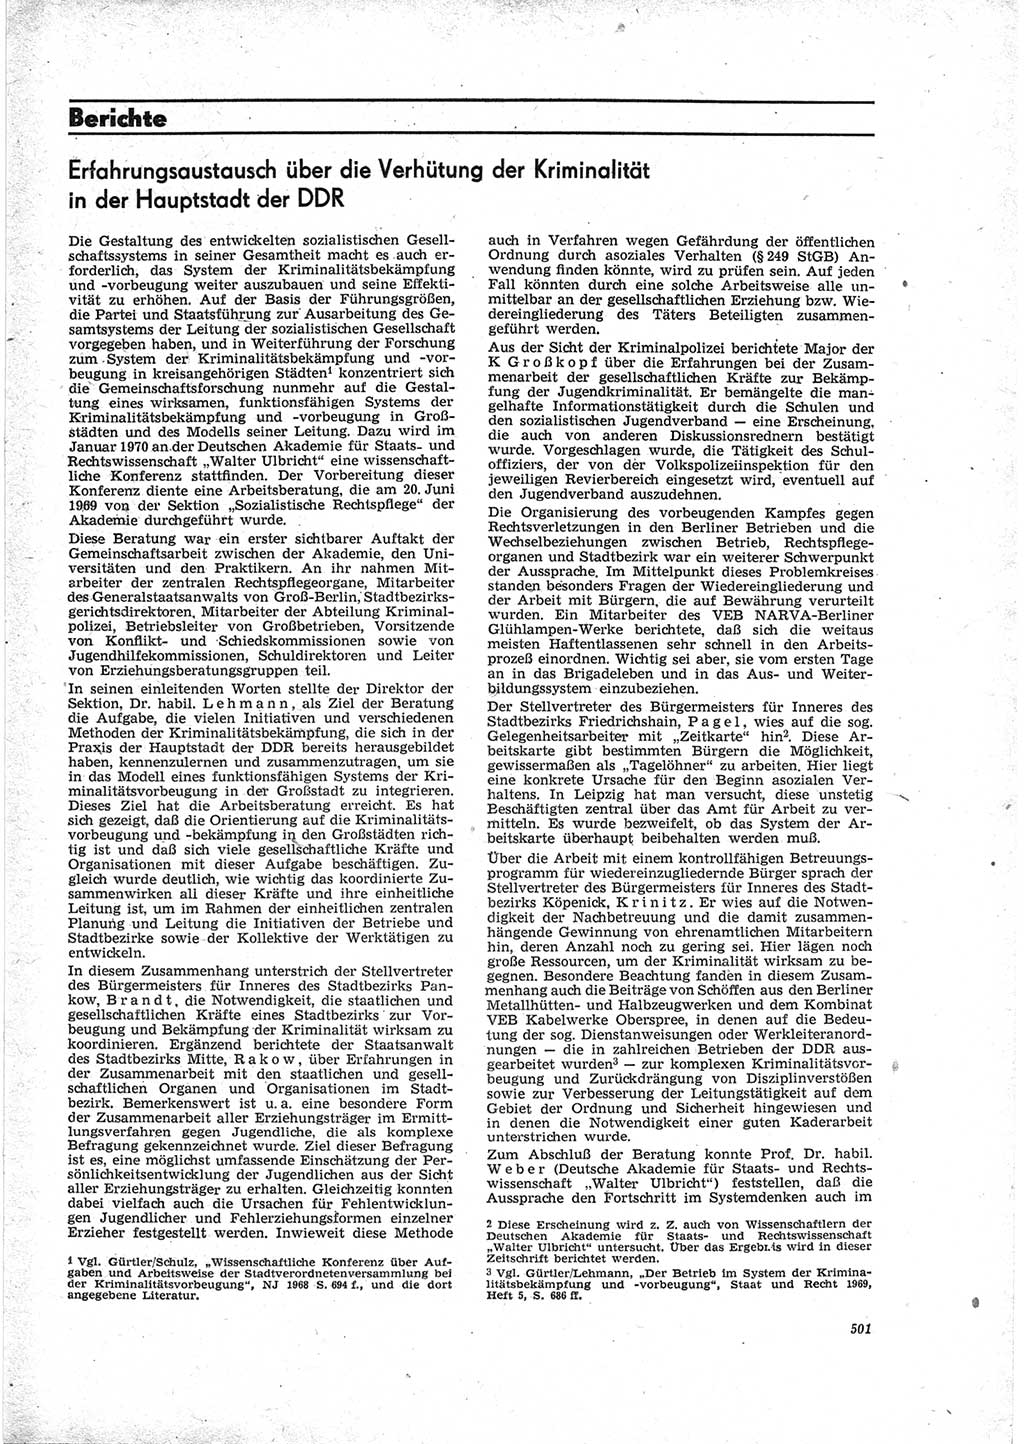 Neue Justiz (NJ), Zeitschrift für Recht und Rechtswissenschaft [Deutsche Demokratische Republik (DDR)], 23. Jahrgang 1969, Seite 501 (NJ DDR 1969, S. 501)